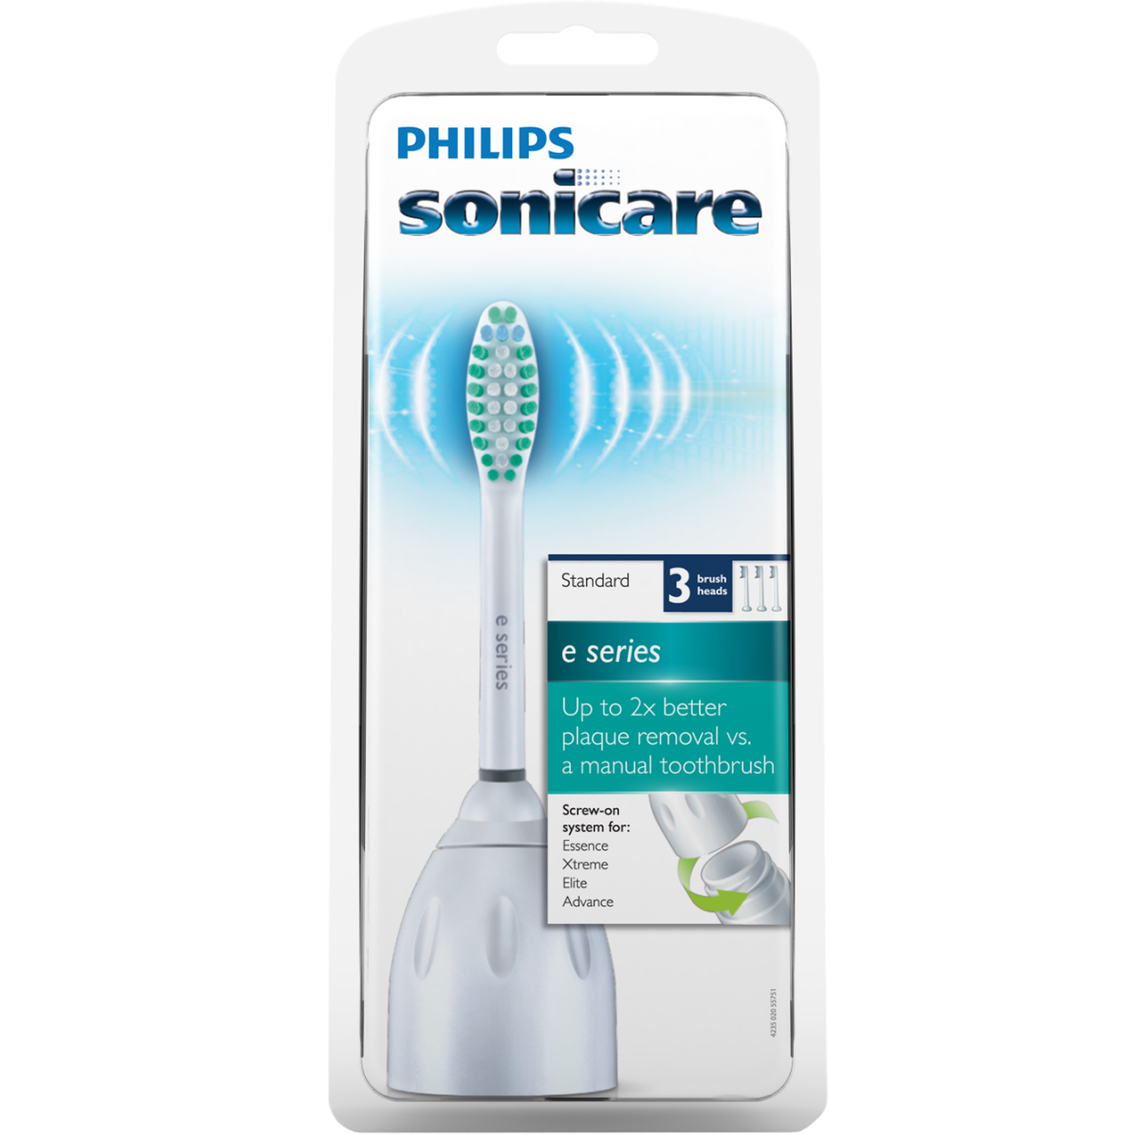 Philips Sonicare Elite Brush Head Standard 3 pk. - Image 2 of 2